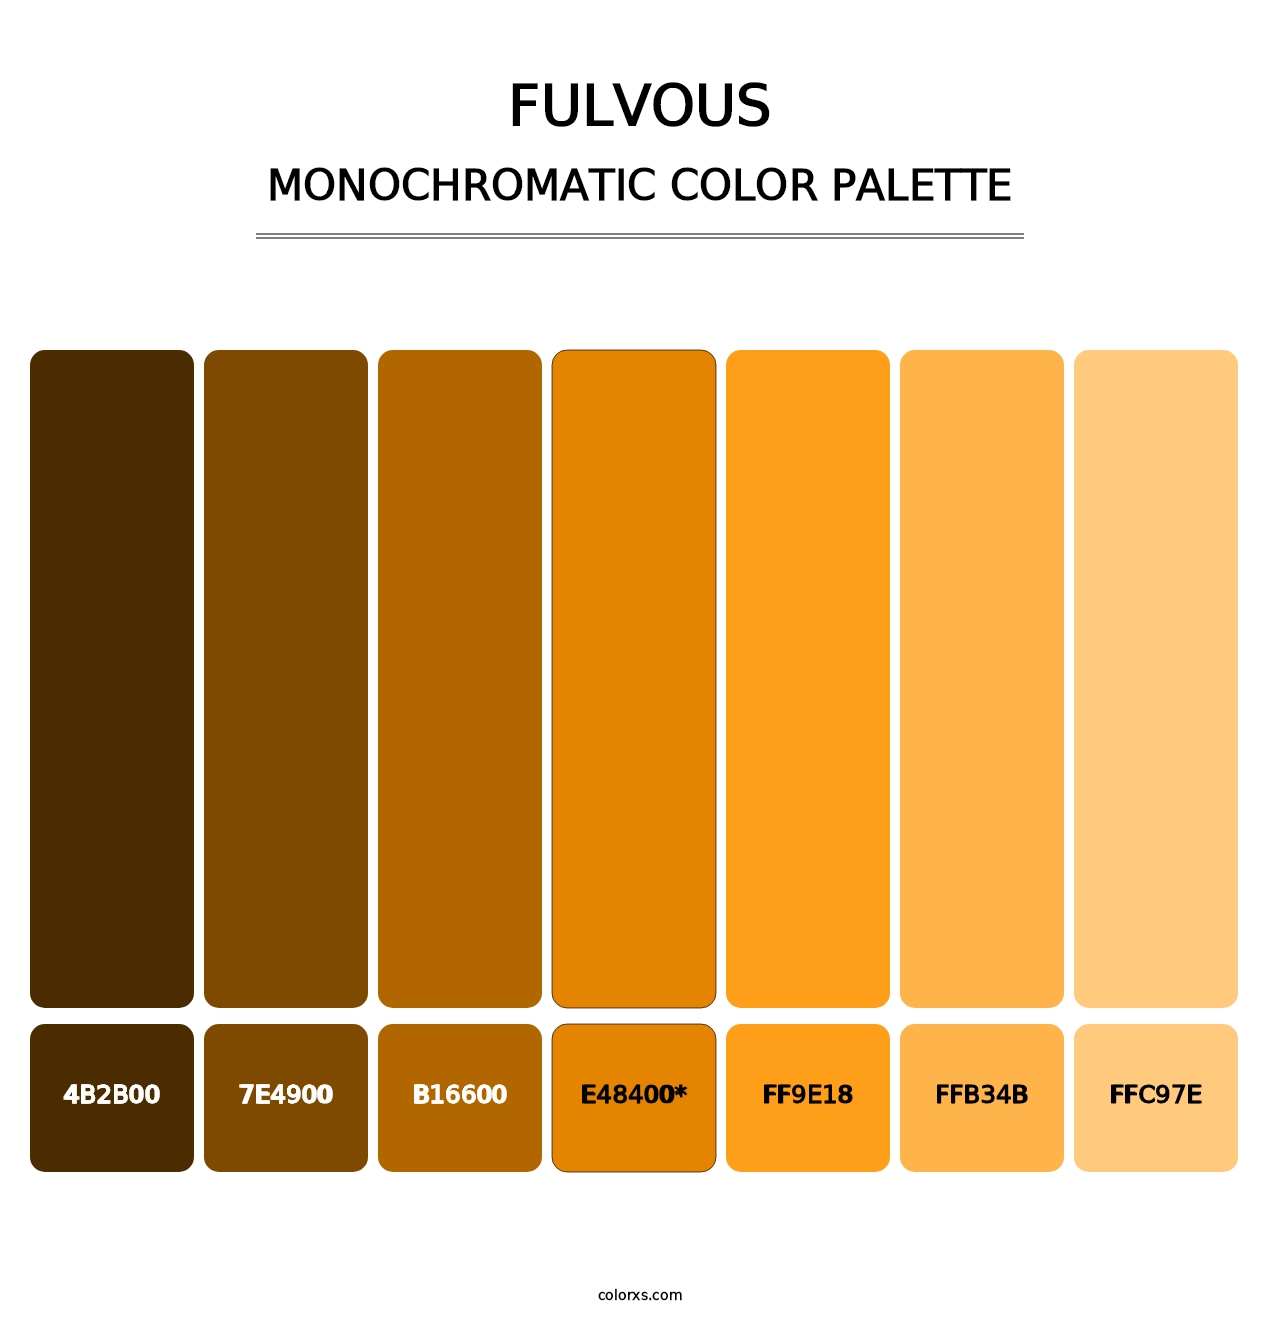 Fulvous - Monochromatic Color Palette